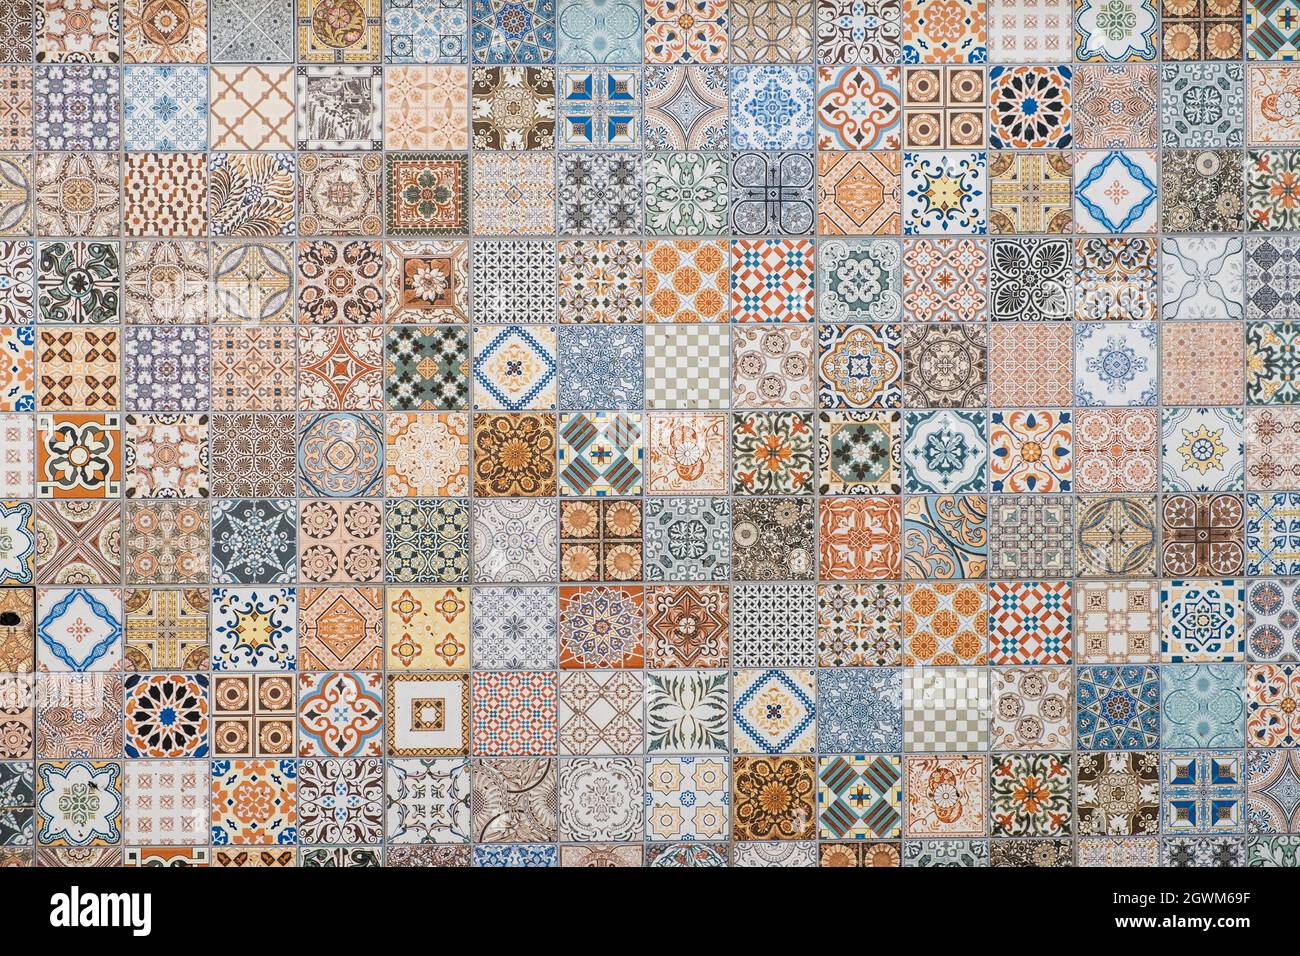 motif carreaux colorés, carreaux portugais patchwork Banque D'Images